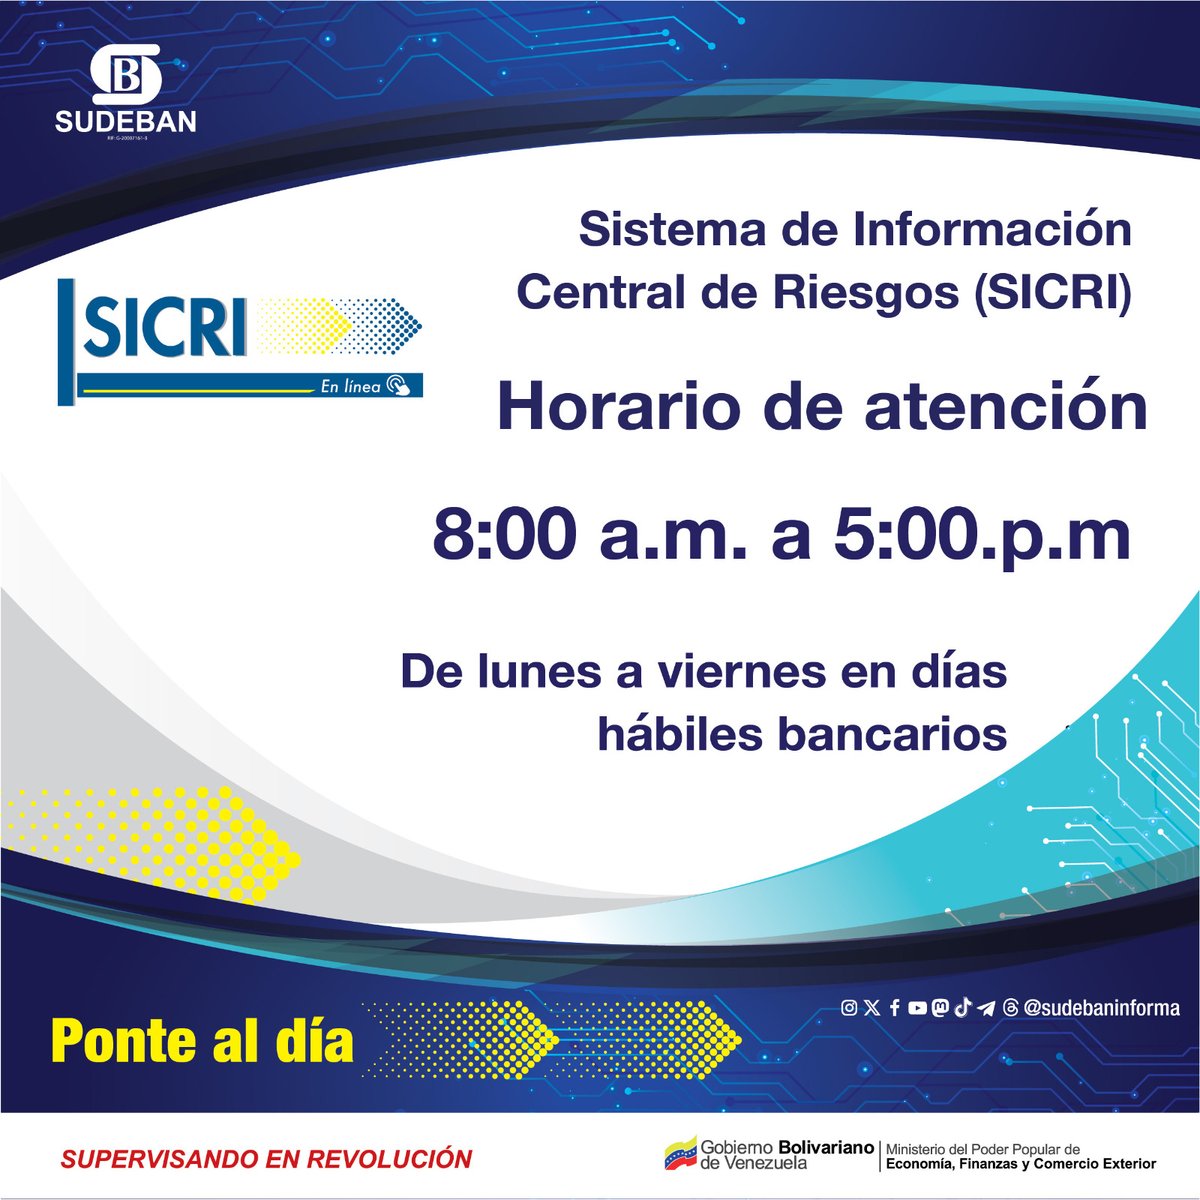 #Entérate || El Sistema de Información Central de Riesgos (SICRI) en línea está activo de Lunes a Viernes de 08:00 a.m a 05:00 p.m en los días hábiles bancarios. #Sudeban #SICRI #SupervisandoEnRevolución #VenezuelaCalorPatrio